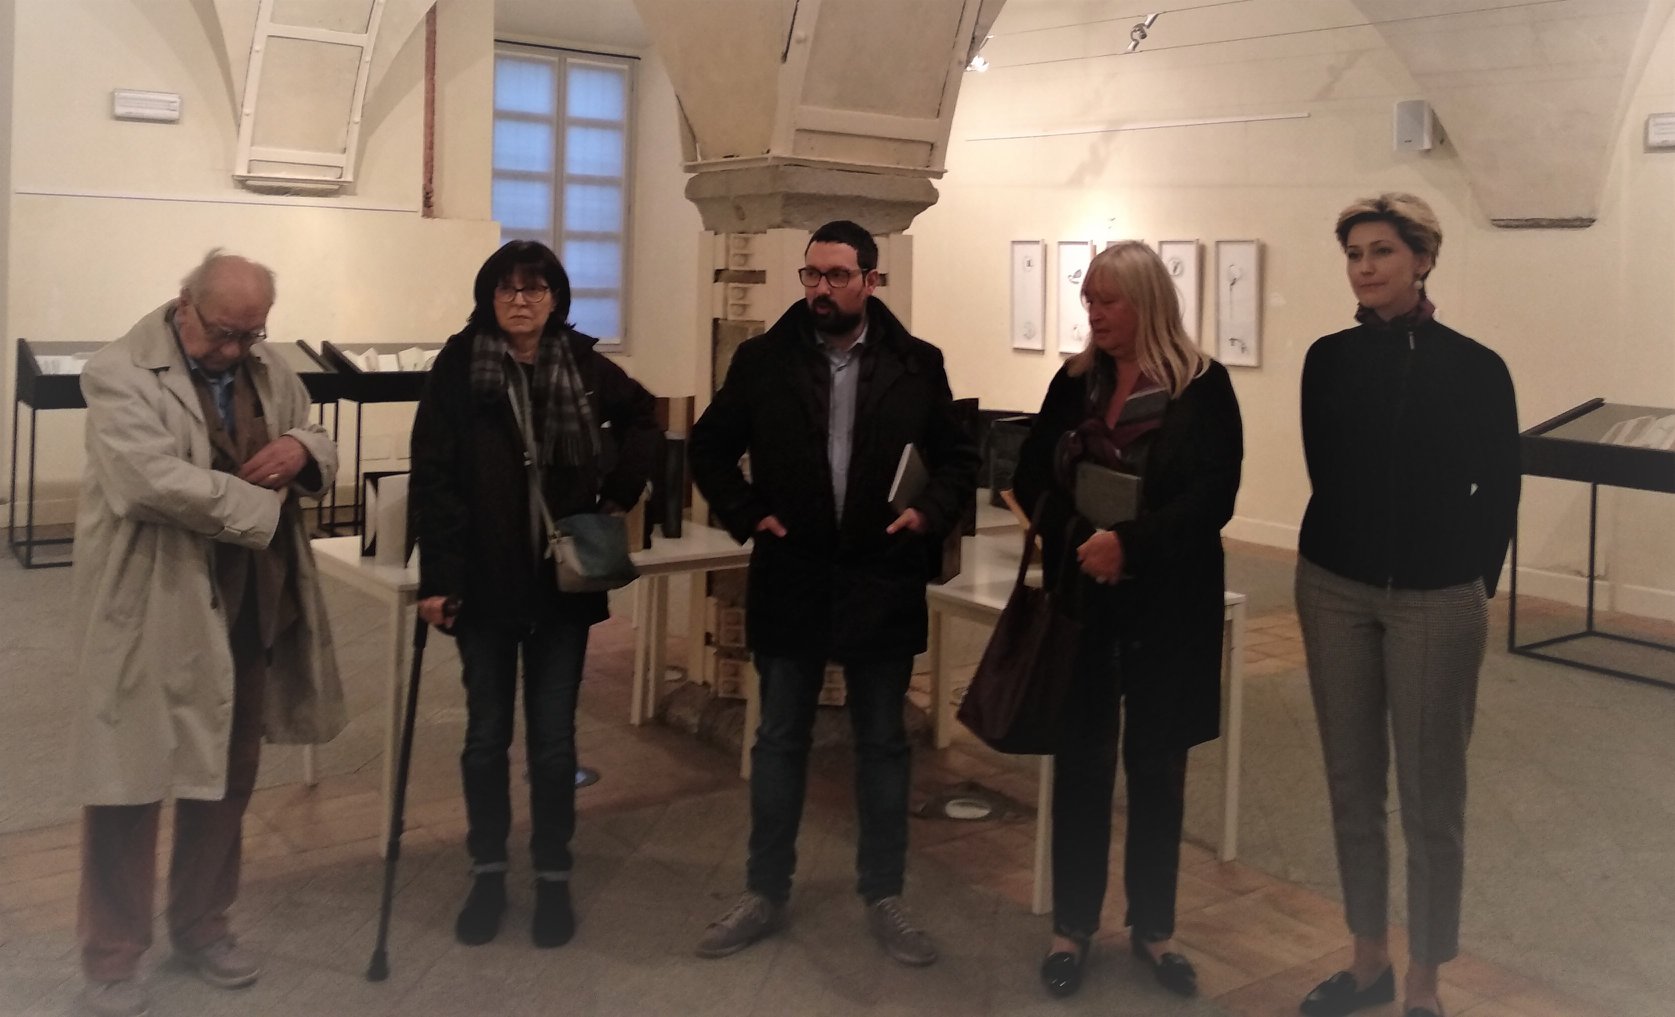 Inaugurarea expoziției italo-române a cărților de artist: “Răscruce” la Palazzo Broletto din Pavia